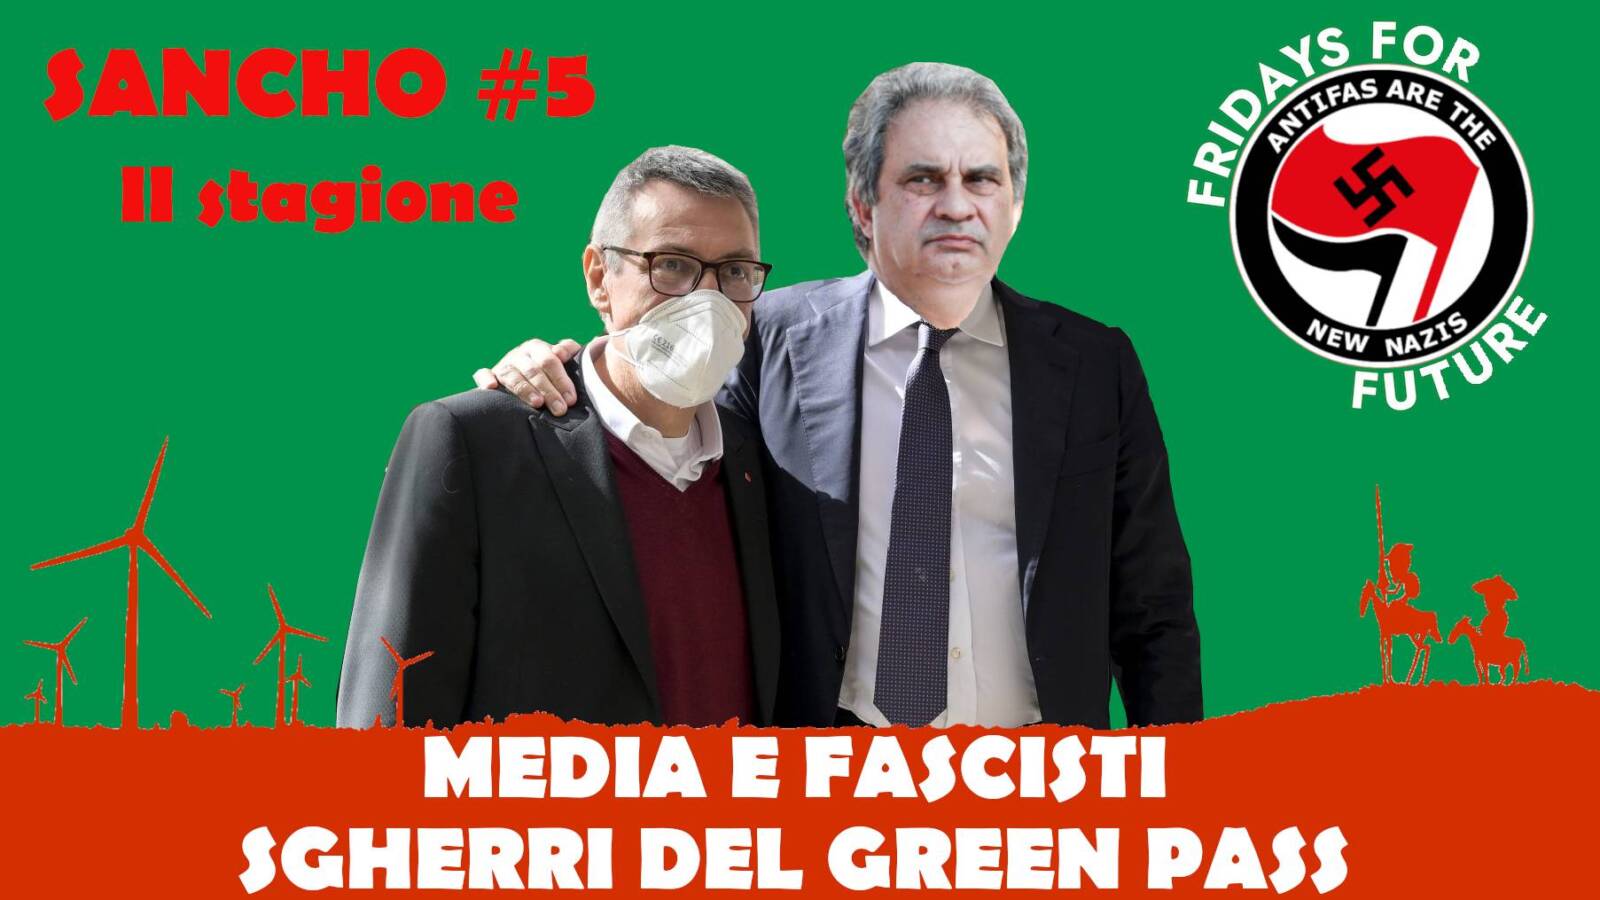 Sancho #5 II stagione - Fulvio Grimaldi - Media e fascisti sgherri del Green Pass